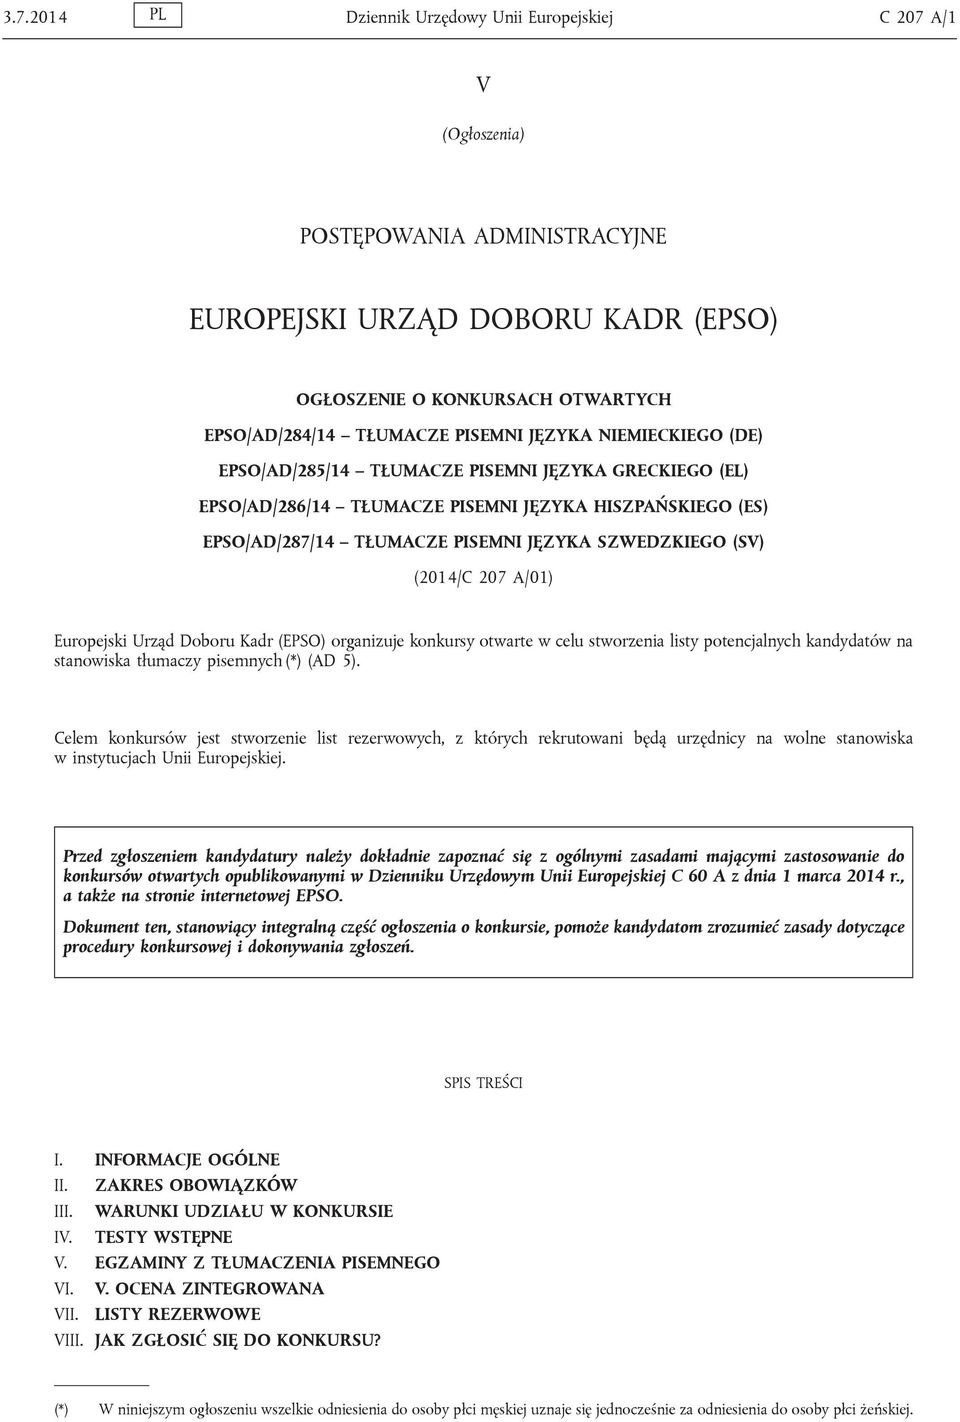 (SV) (2014/C 207 A/01) Europejski Urząd Doboru Kadr (EPSO) organizuje konkursy otwarte w celu stworzenia listy potencjalnych kandydatów na stanowiska tłumaczy pisemnych (*) (AD 5).